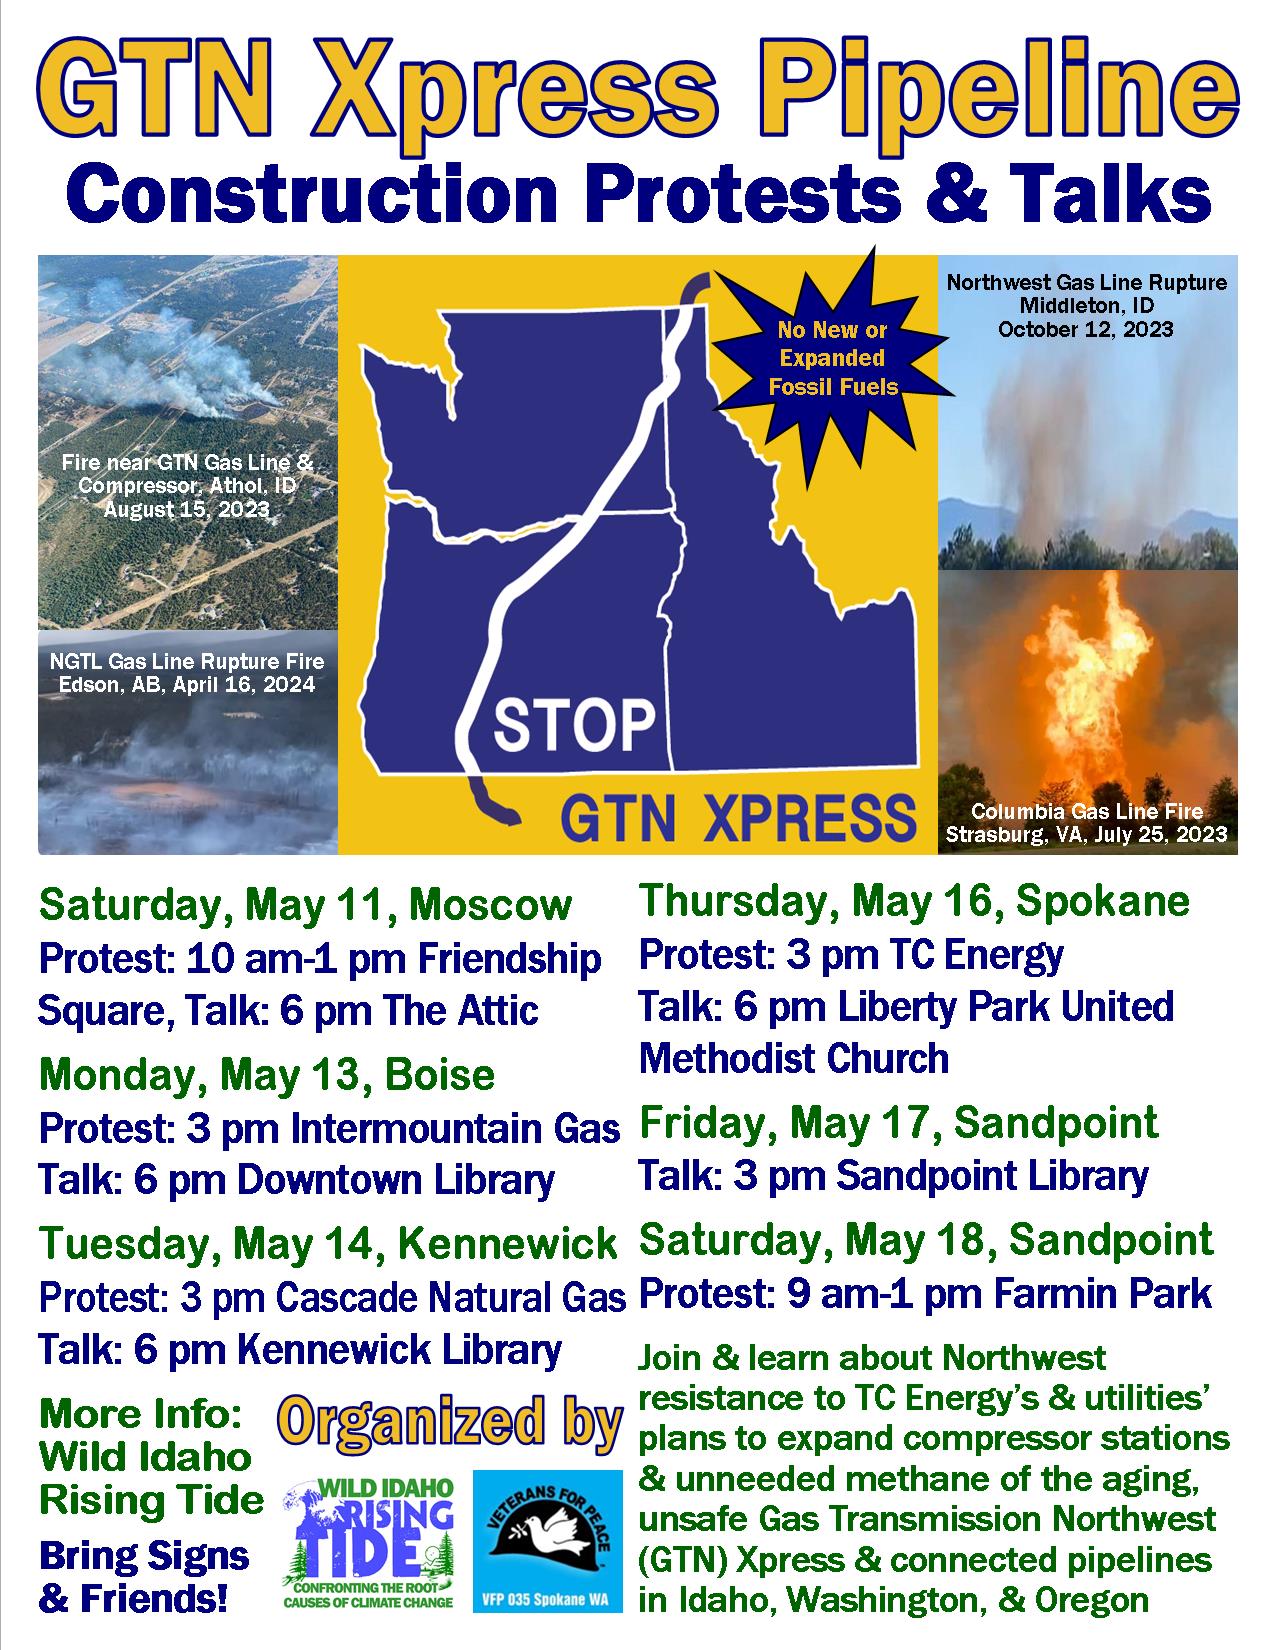 GTN Xpress Construction Protests &amp; Talks Flyer